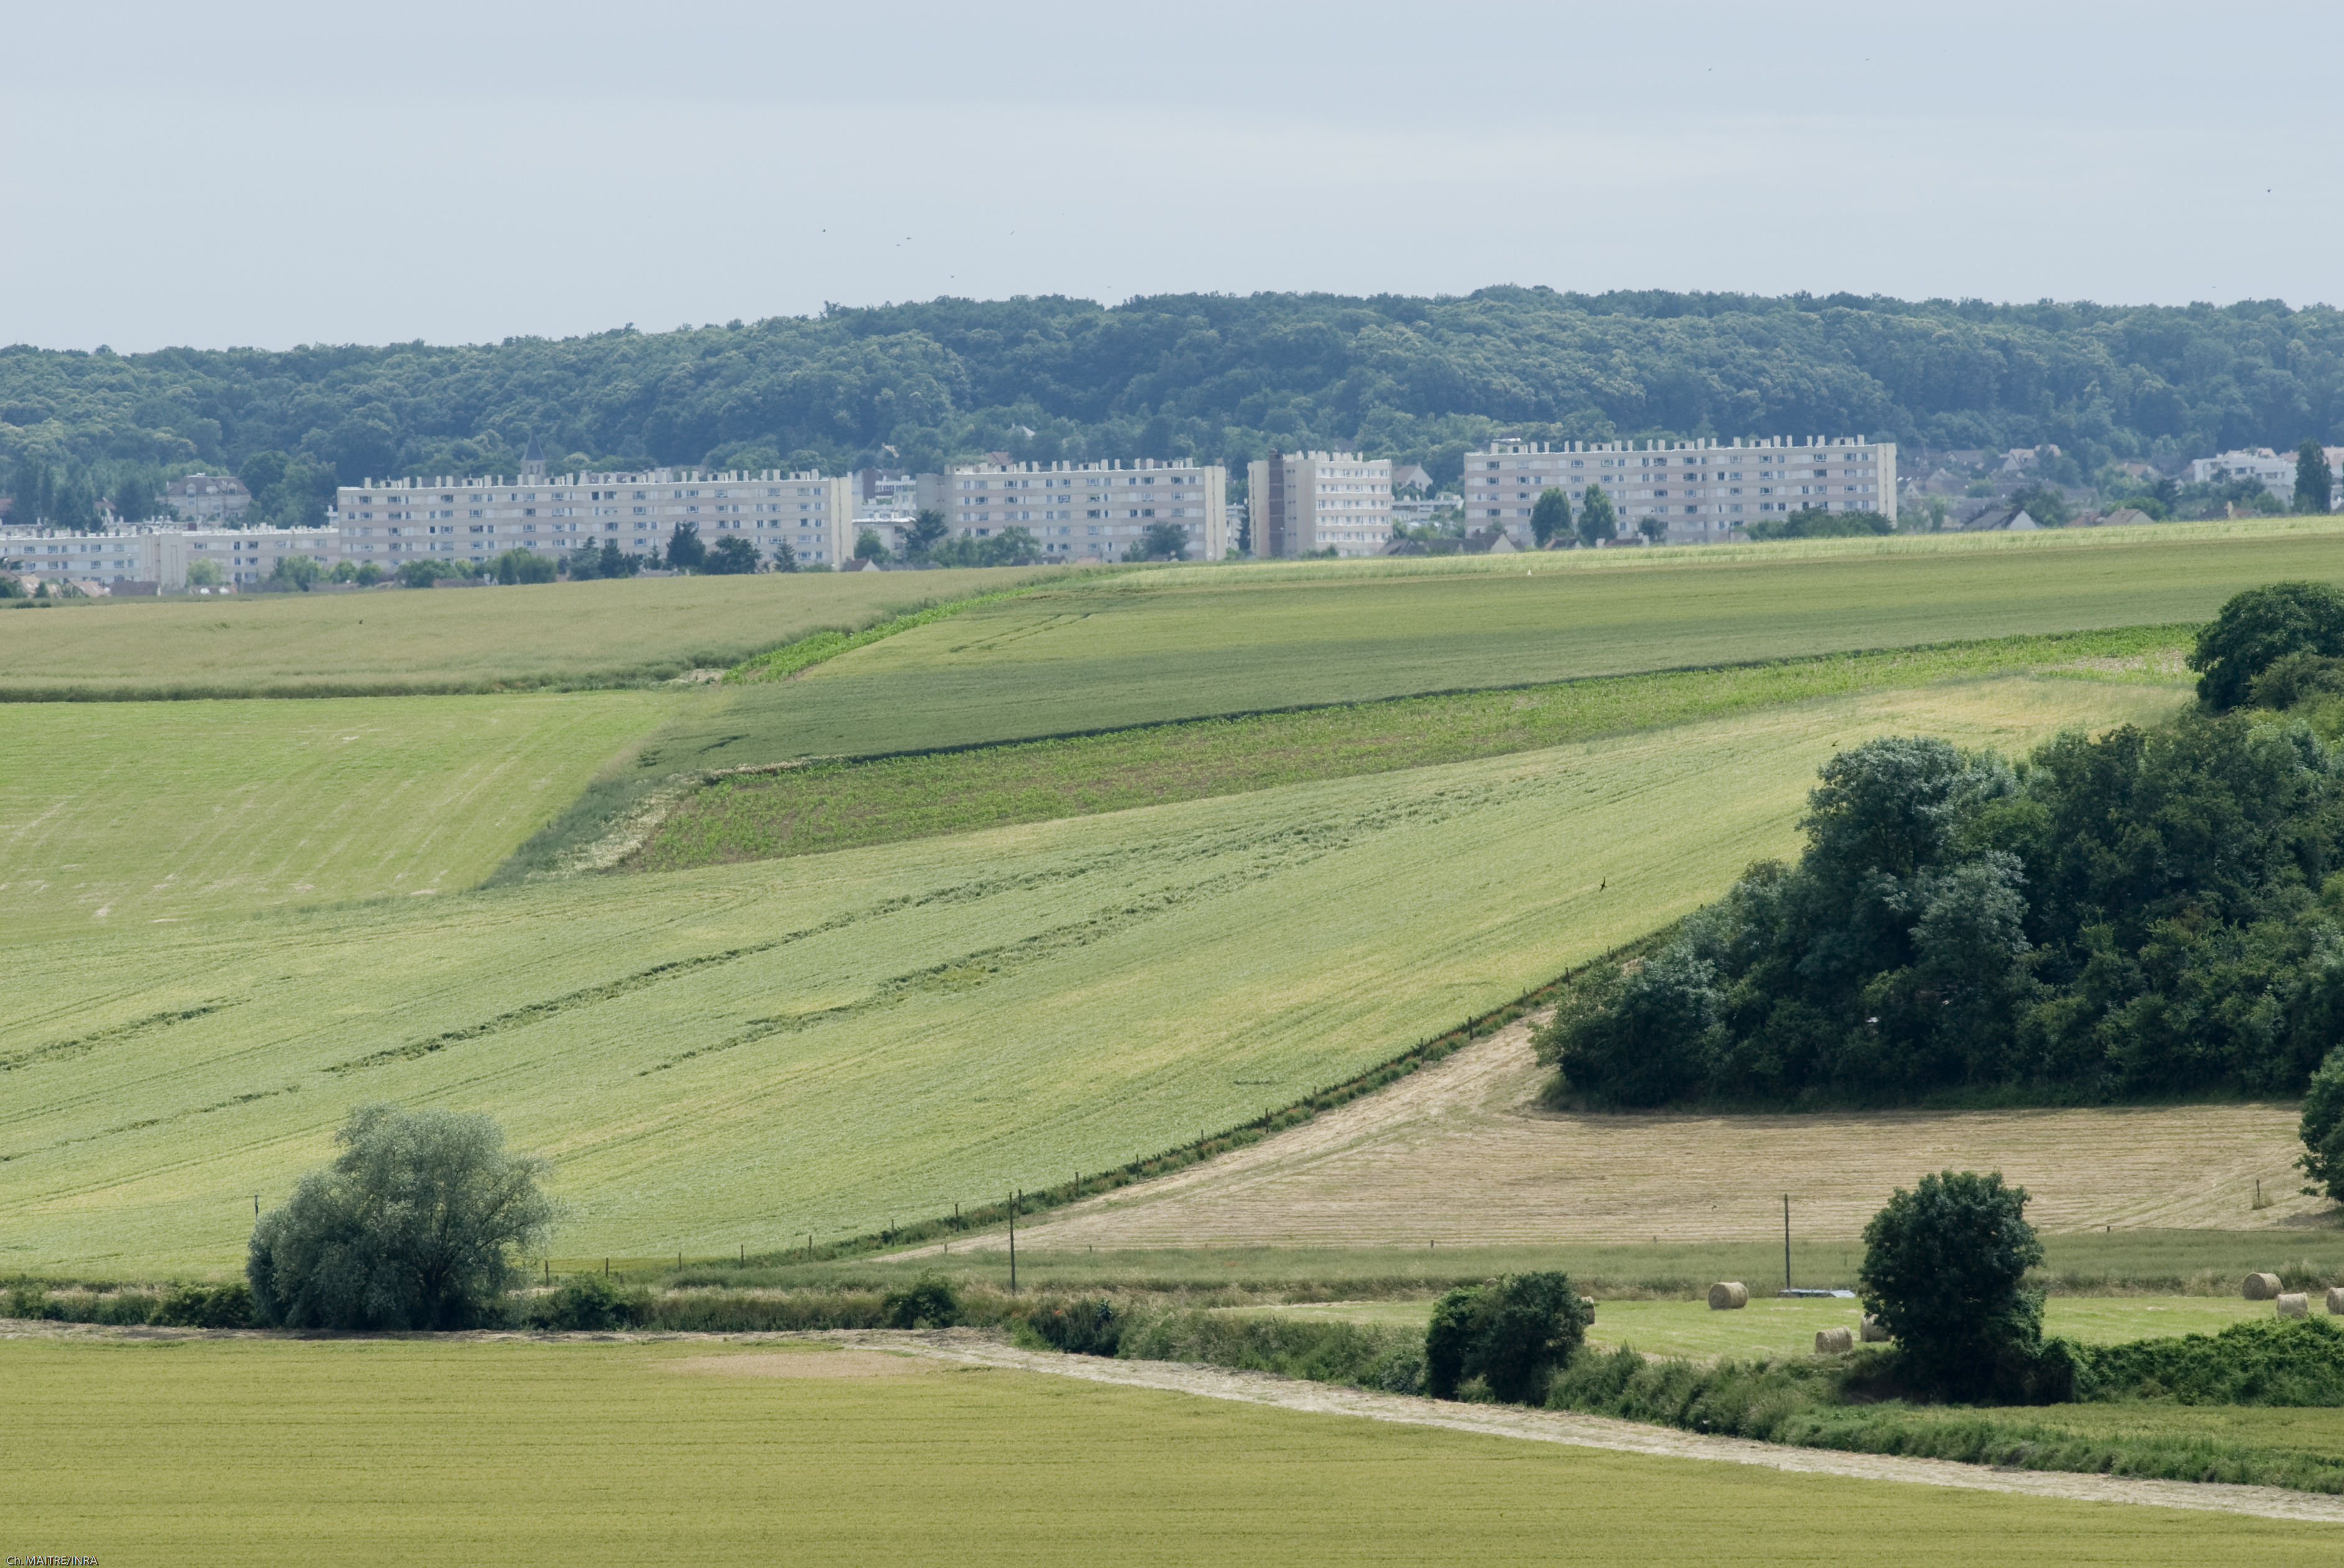 habitations à promixité de zones agricoles, cliché Christophe Maitre, INRAE